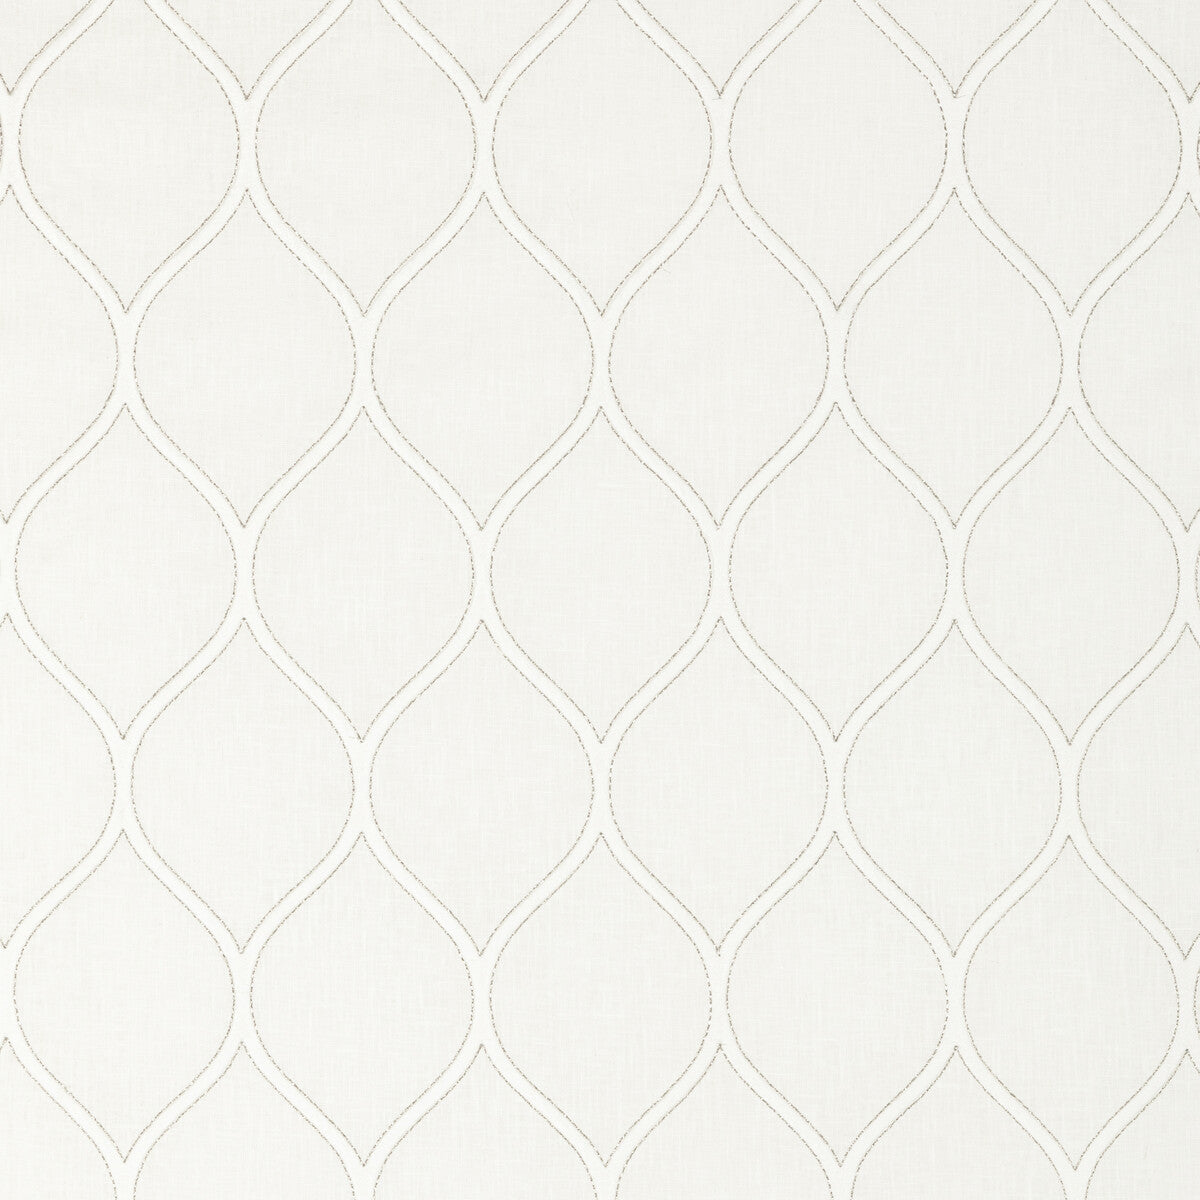 Kravet Basics fabric in 36003-1 color - pattern 36003.1.0 - by Kravet Basics